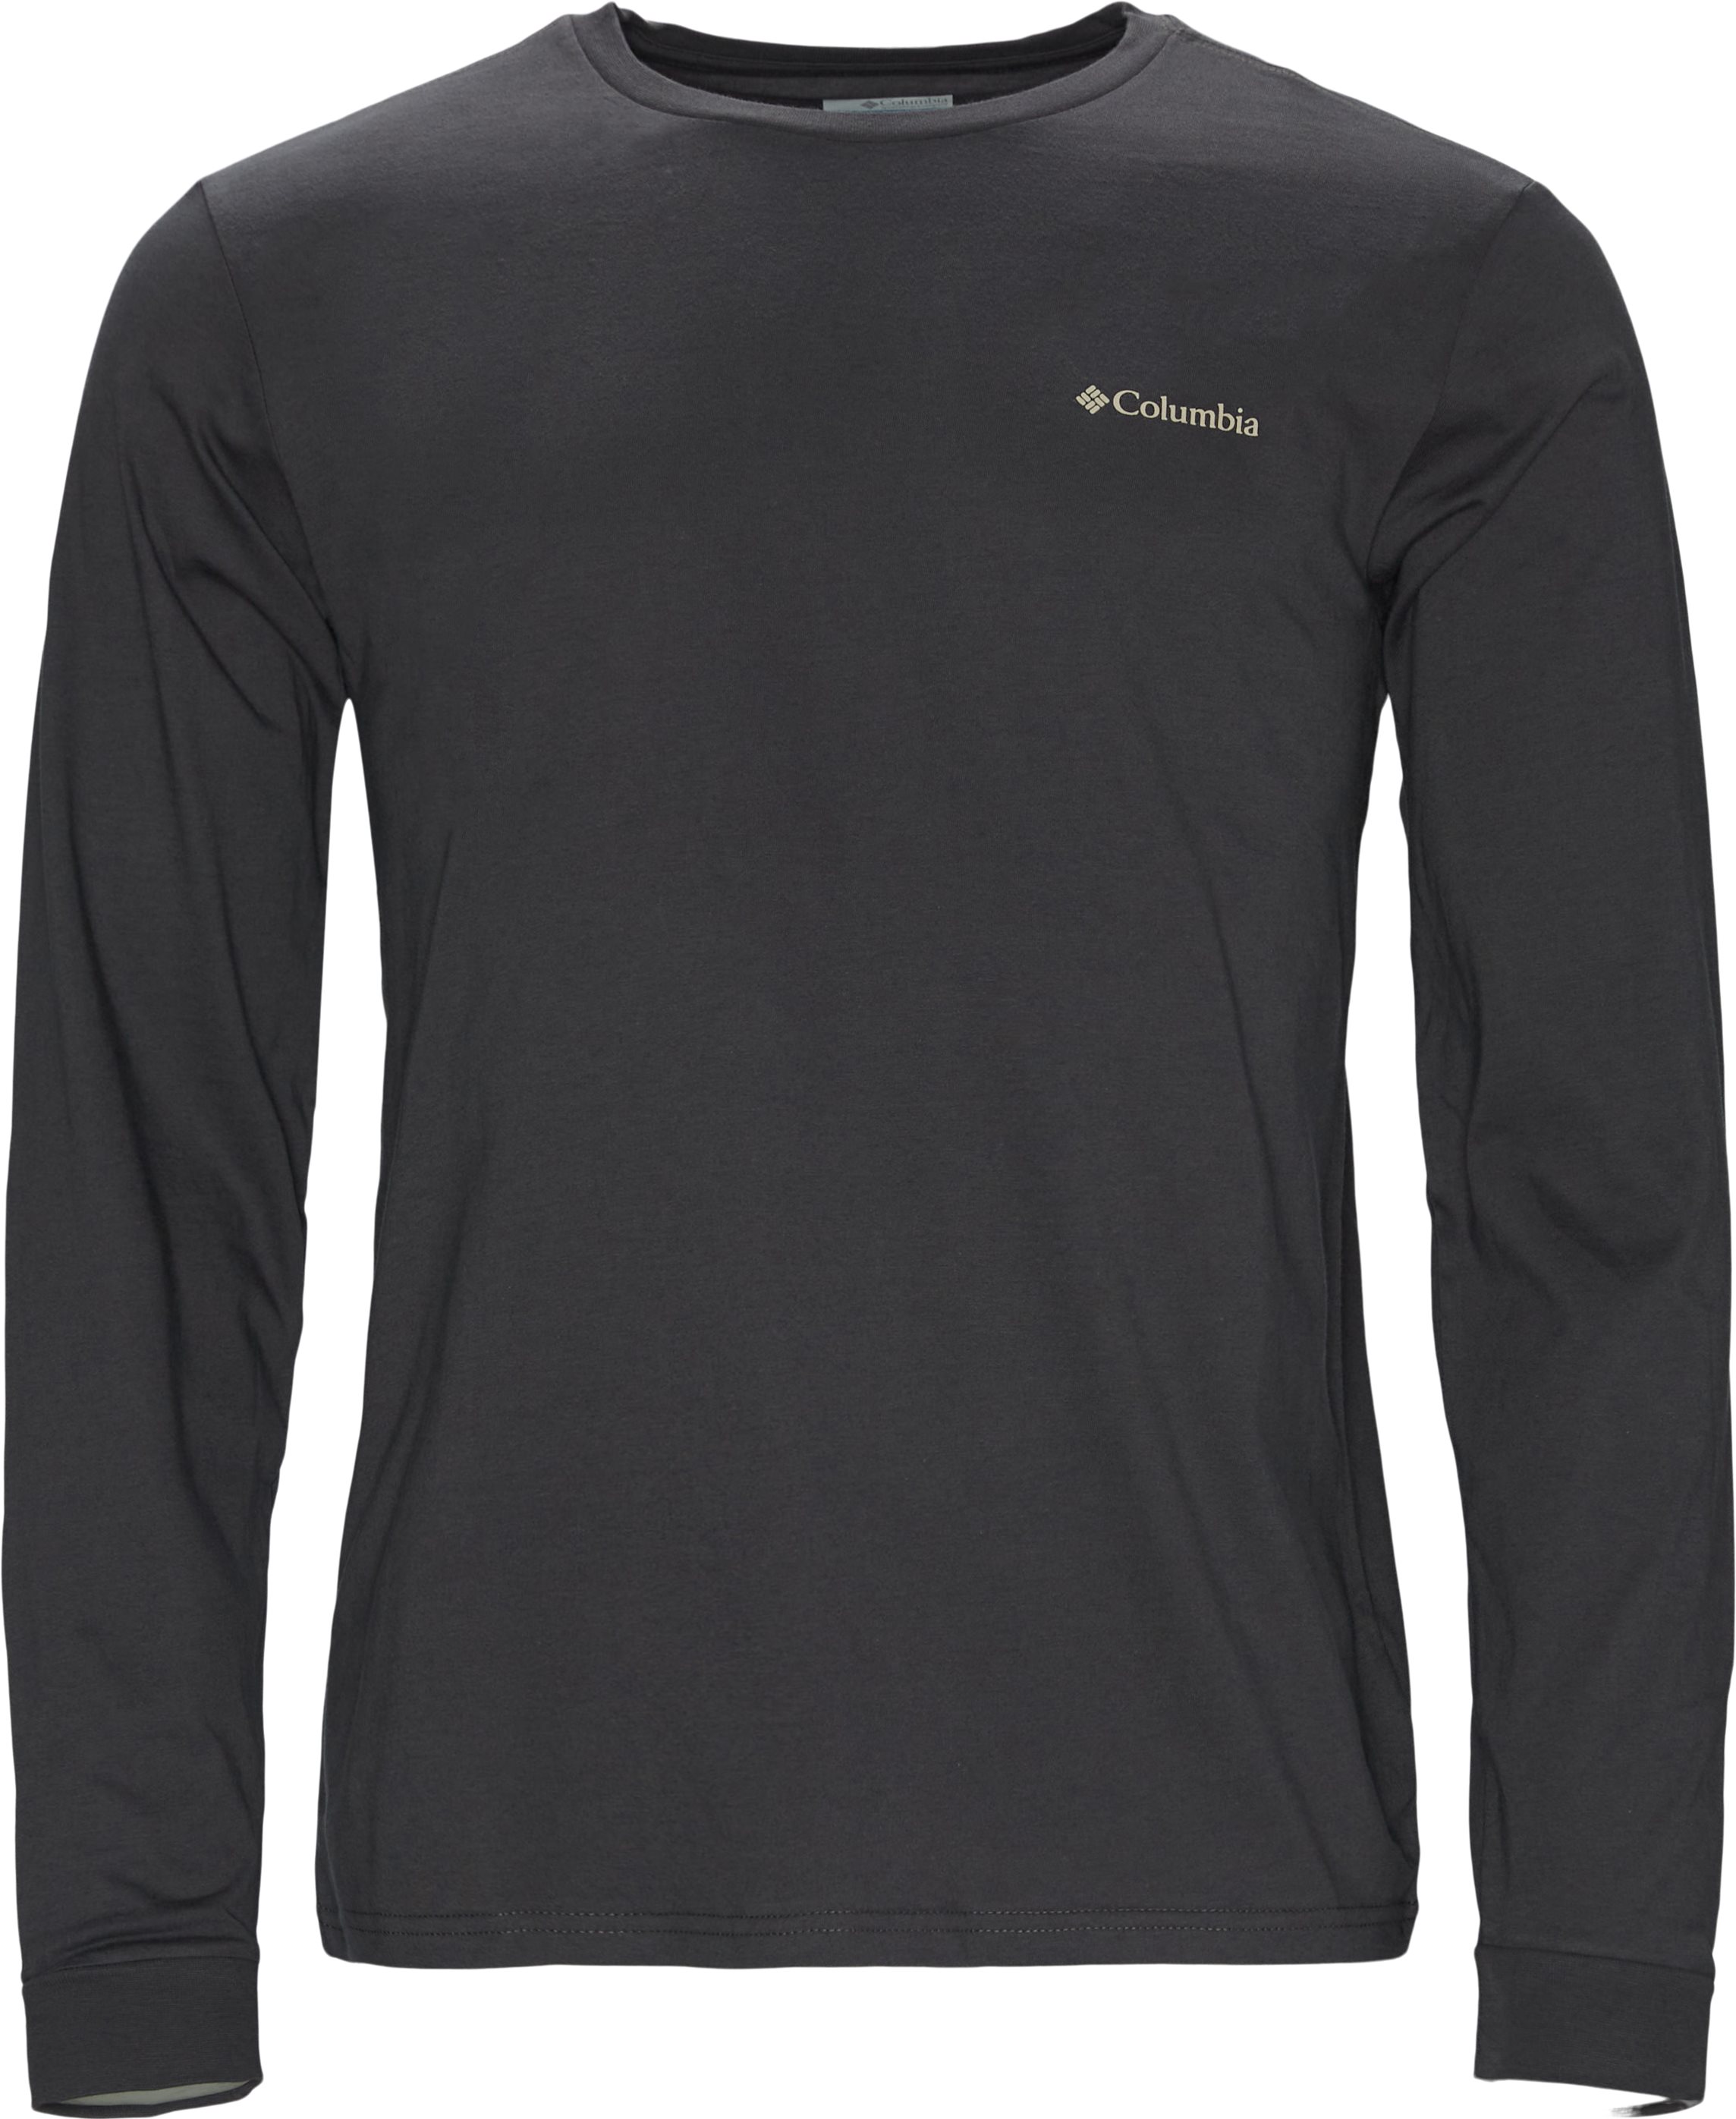 Pikewood L/æ tee - T-shirts - Regular fit - Grey